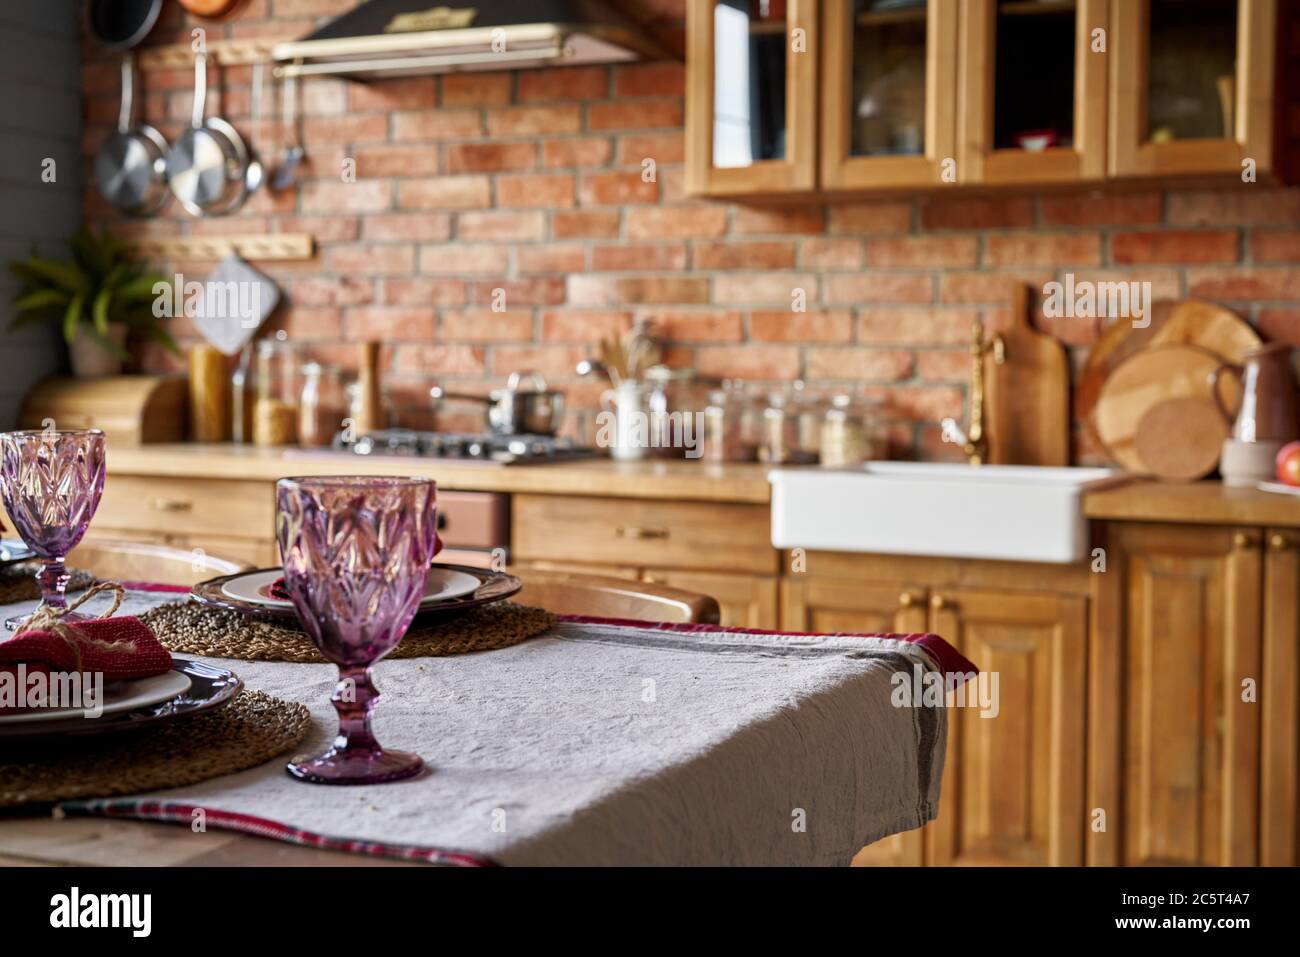 Verblurte Küche Hintergrund Innenraum. Modell. Stockfoto